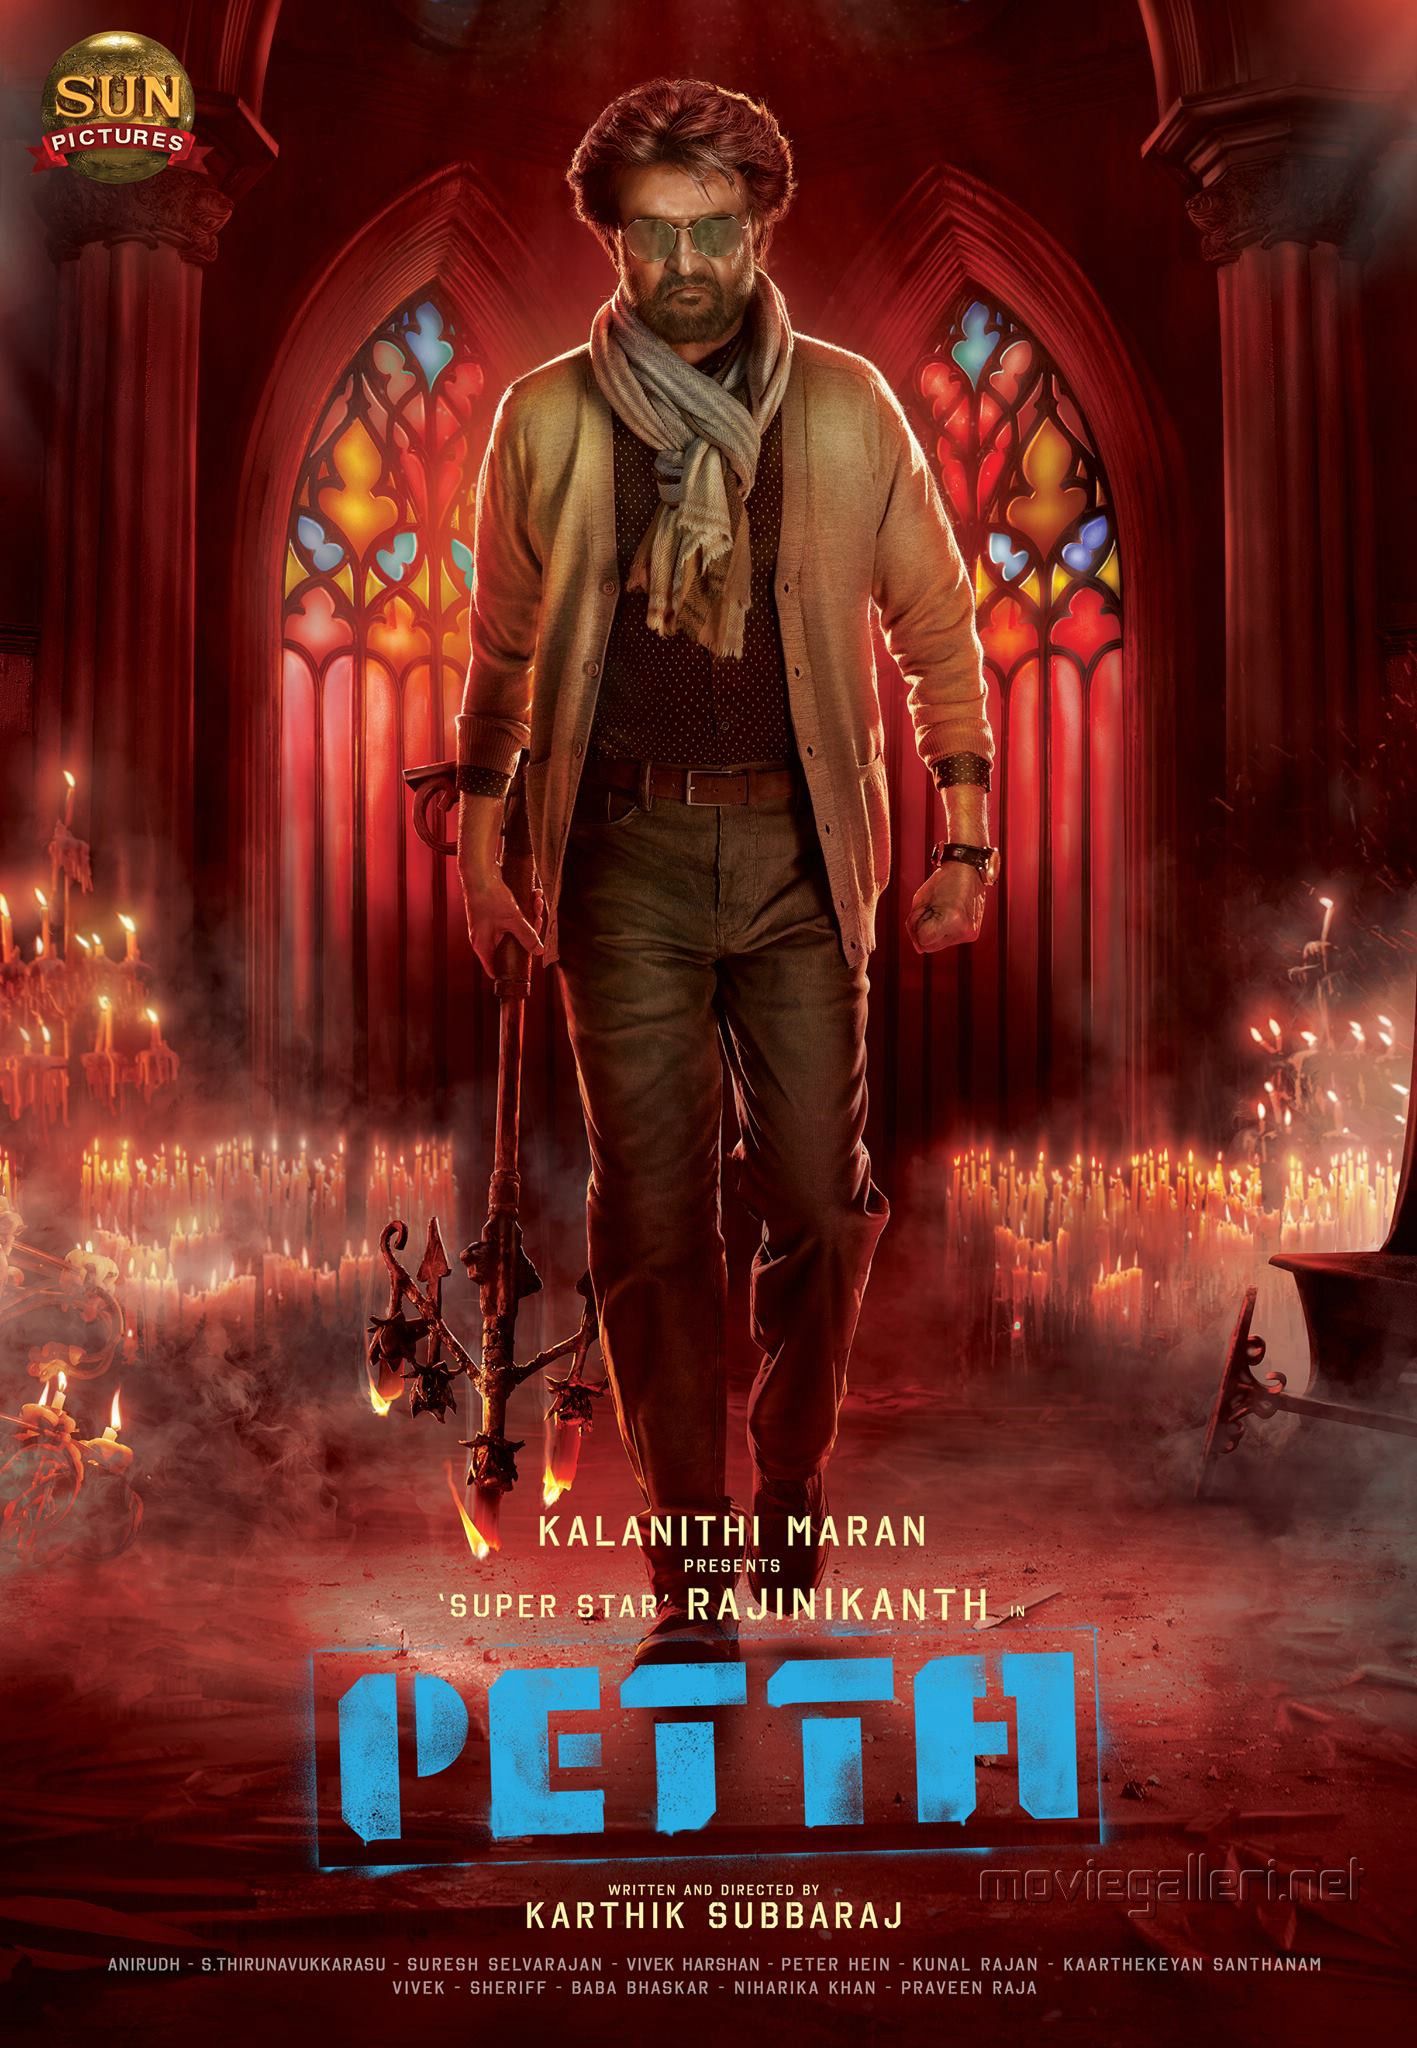 Rajinikanth Petta Movie First Look Poster HD. New Movie Posters